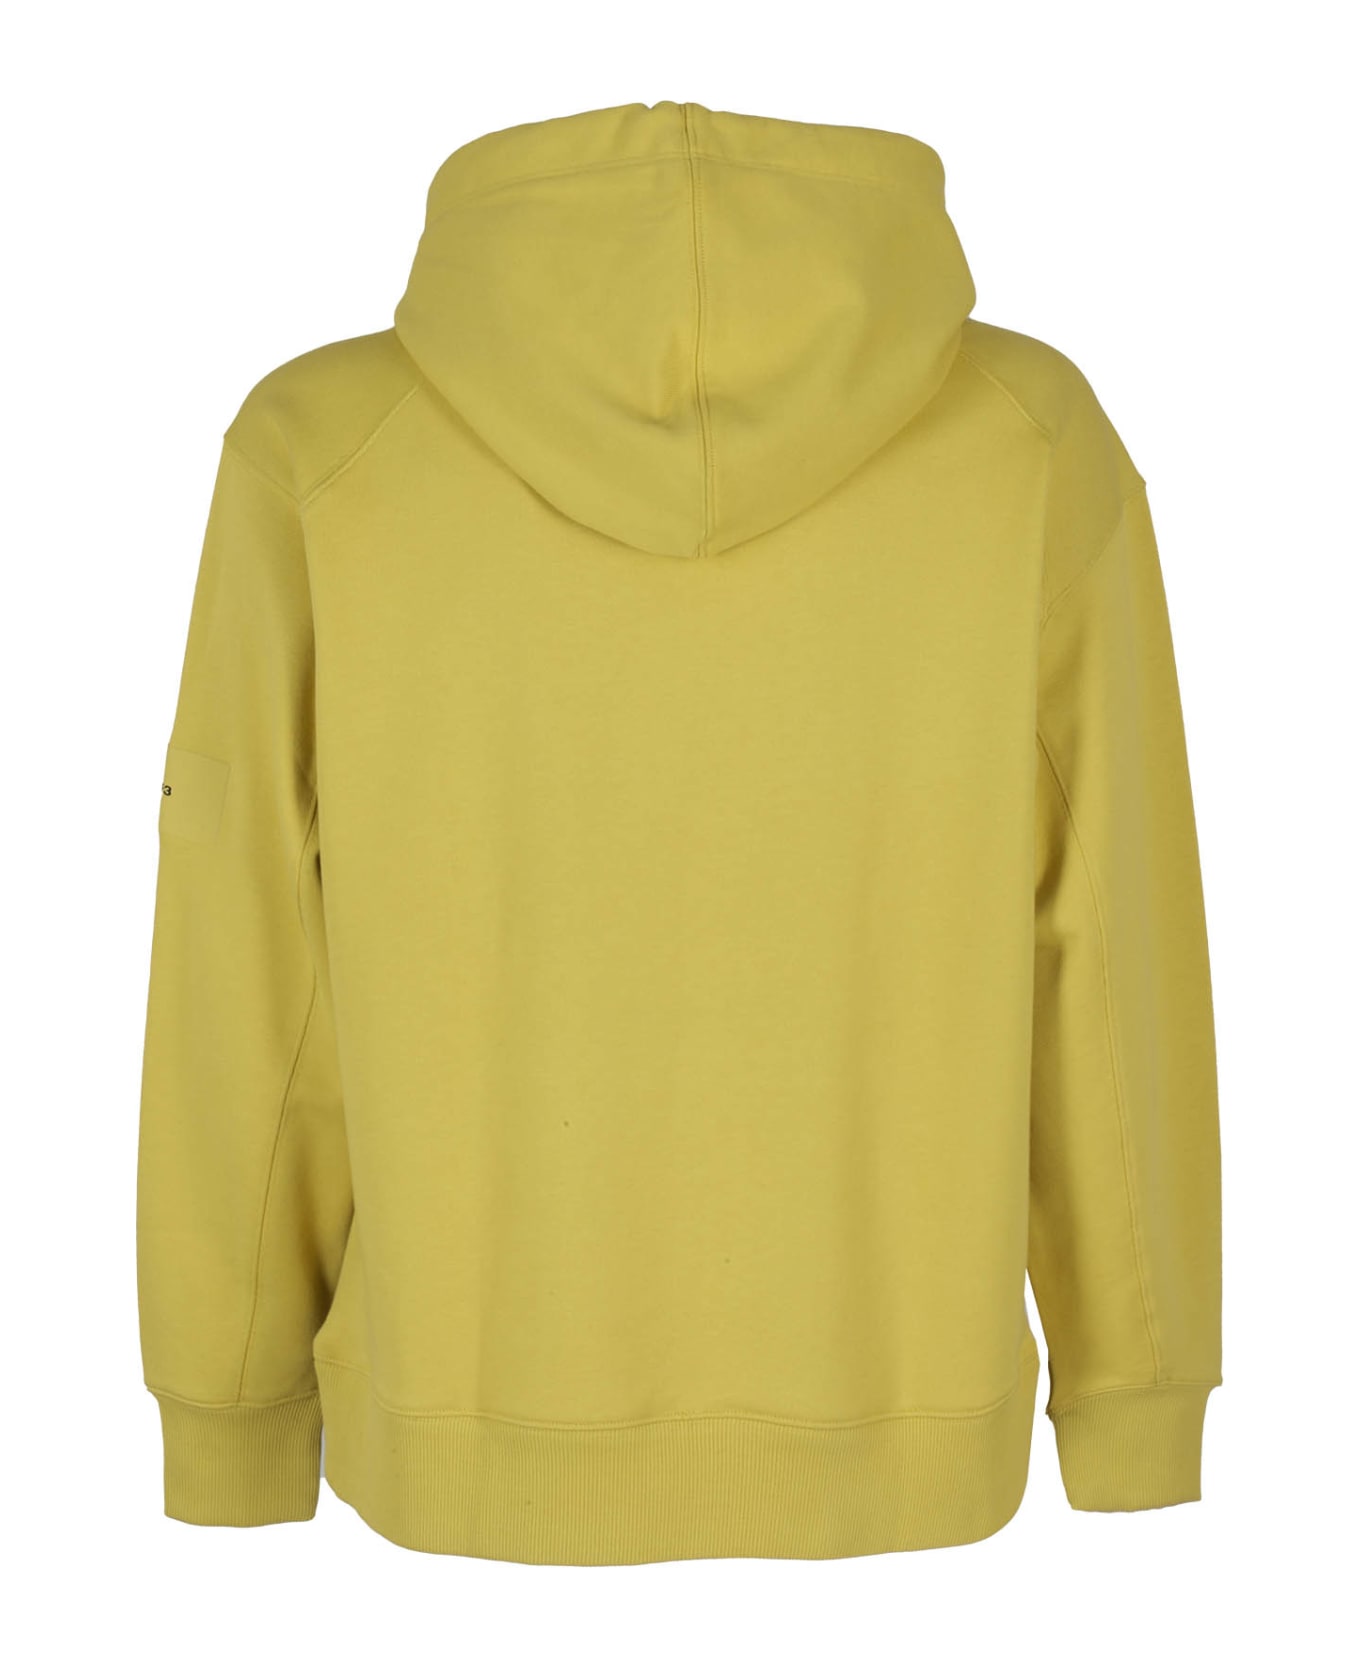 Y-3 Sweatshirt With Hood - Yellow & Orange